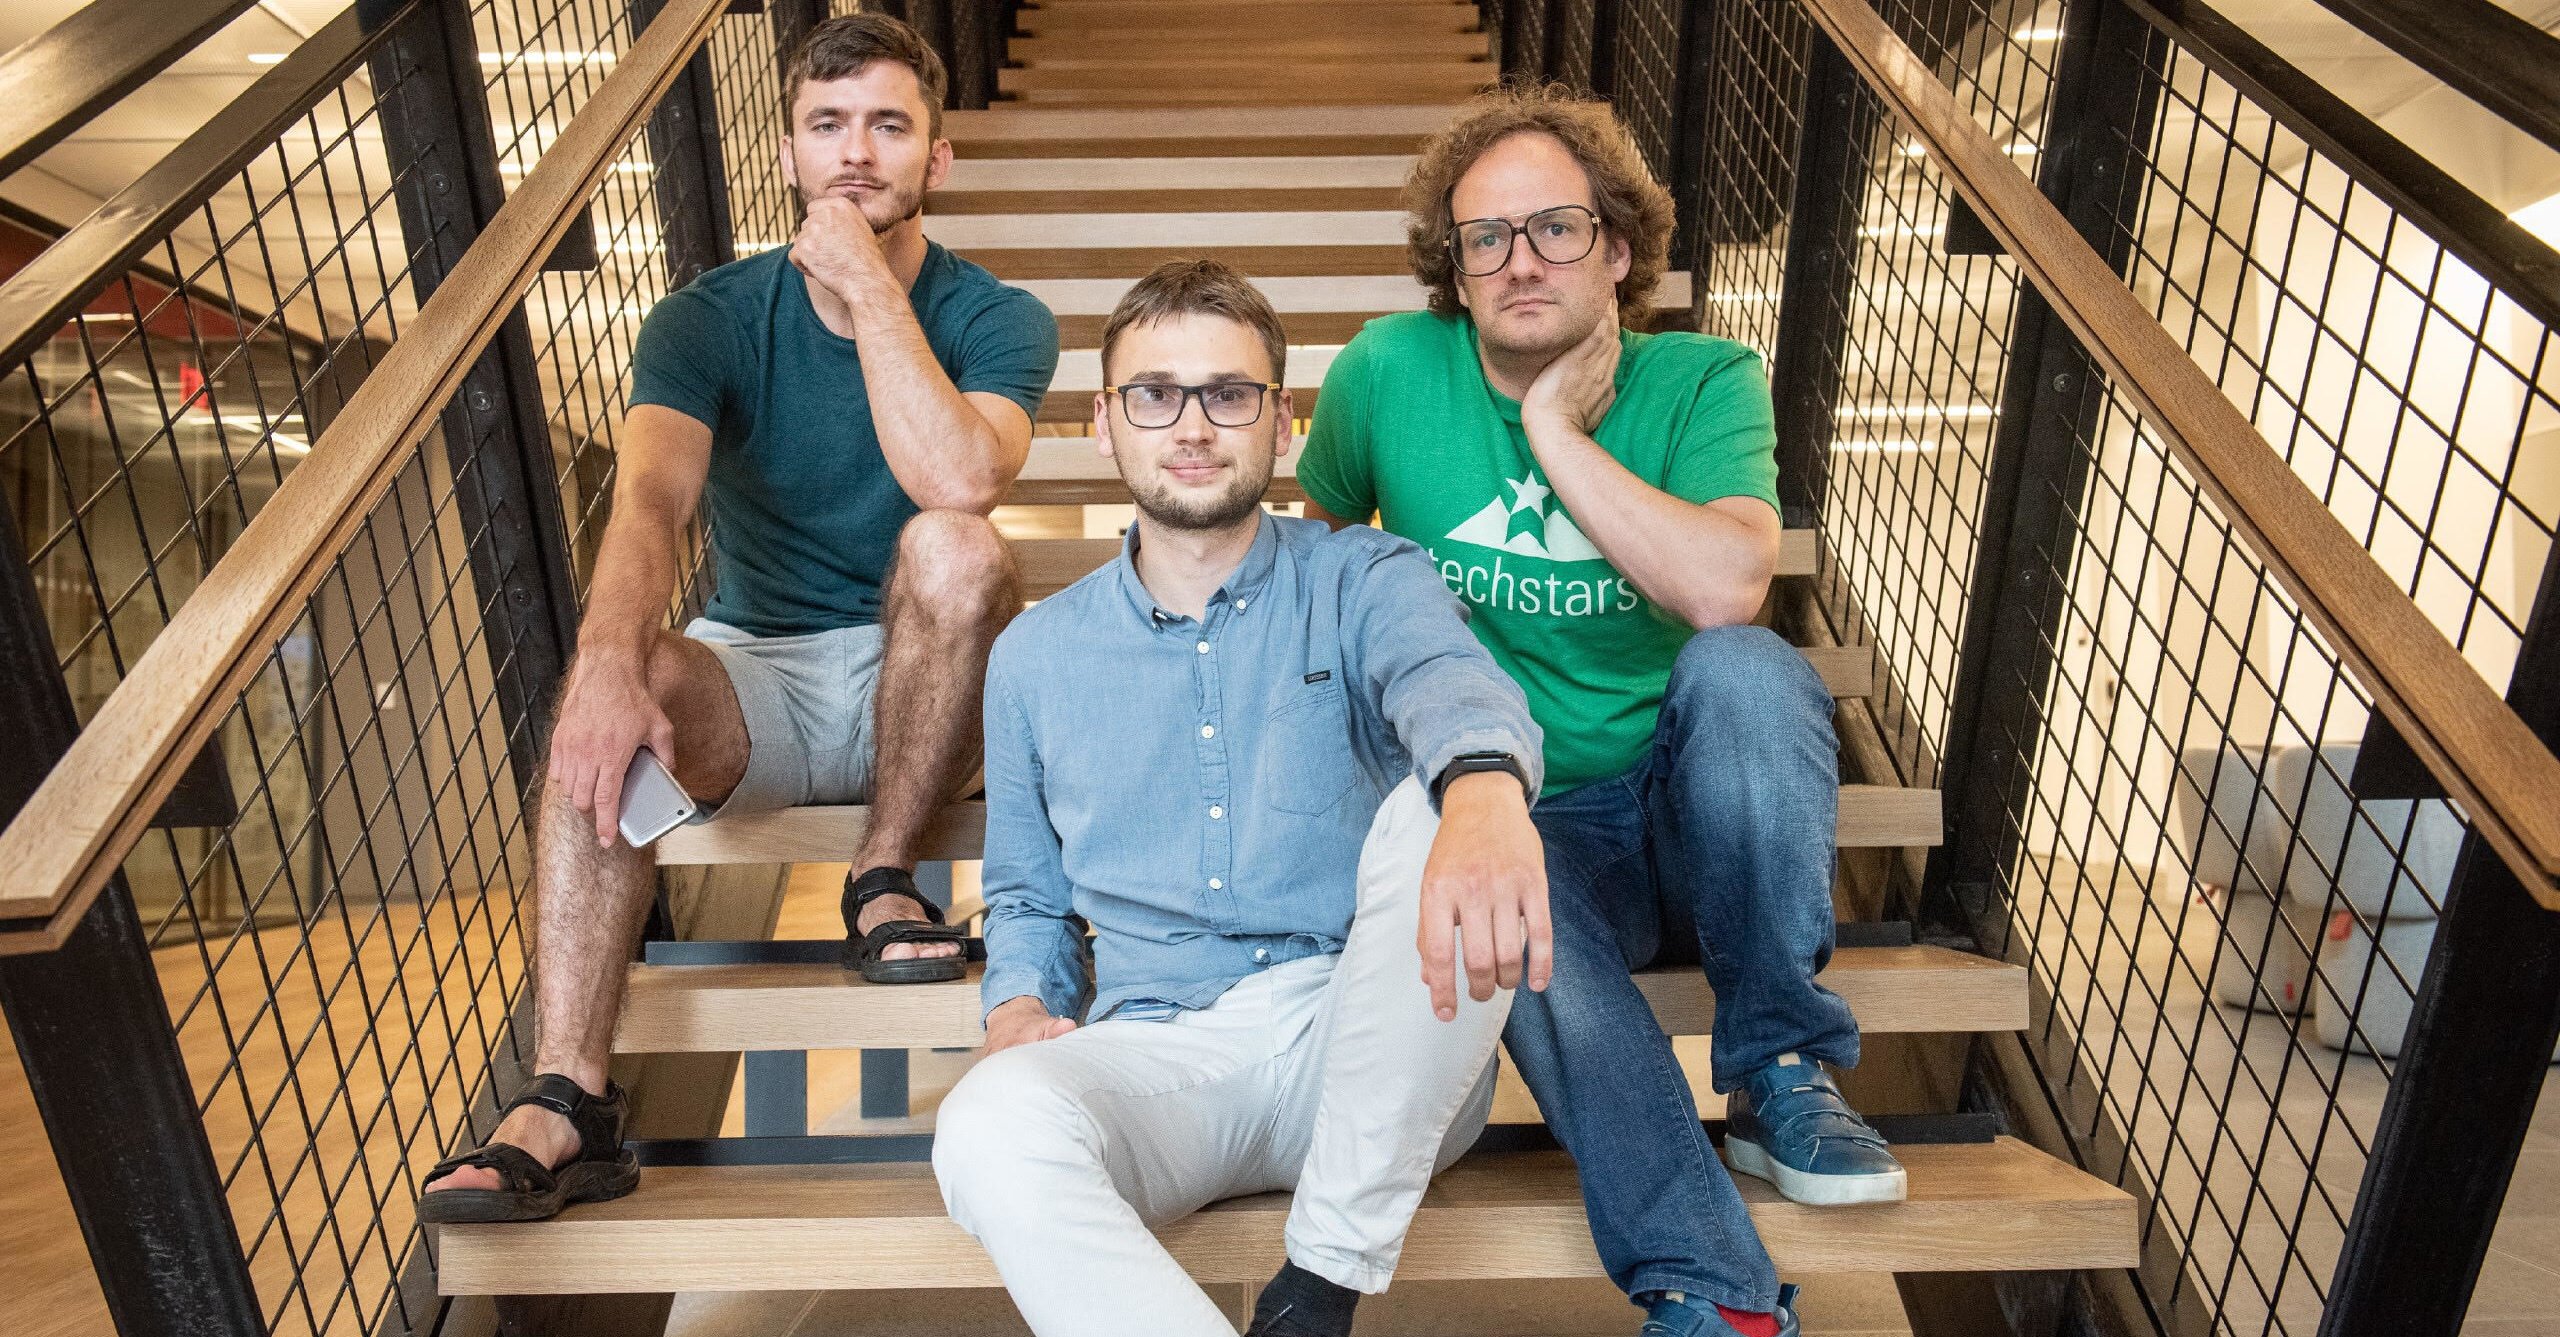 Ukrainian “deepfake-for-good” startup Respeecher raises $1.5 million